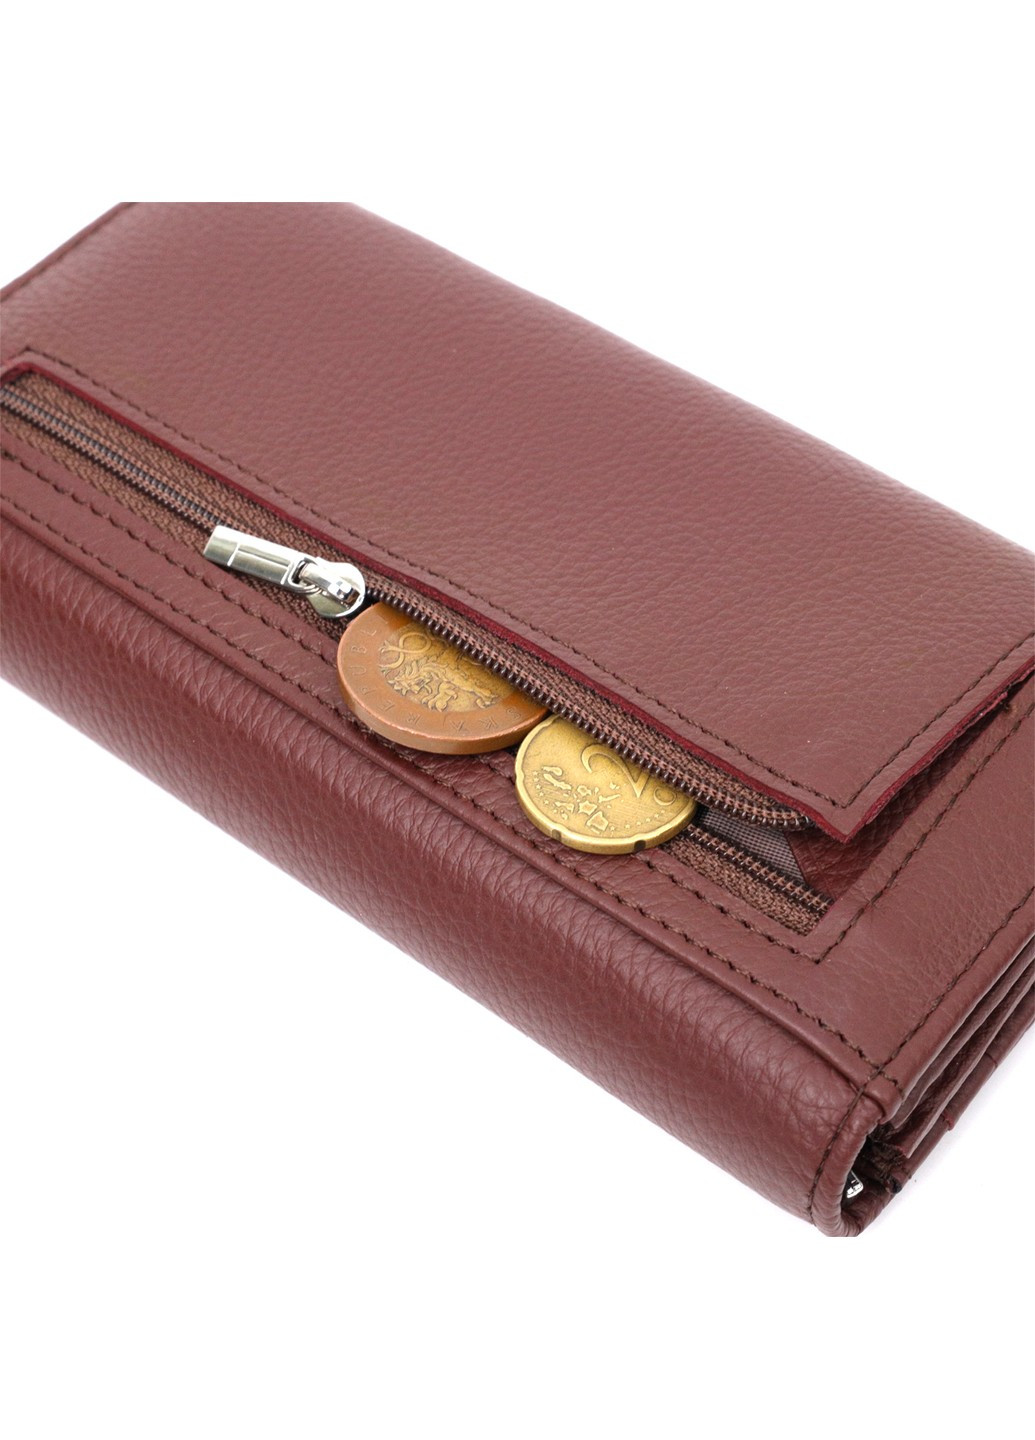 Практичний та жіночний гаманець із натуральної шкіри 19428 Бежевий st leather (276457468)